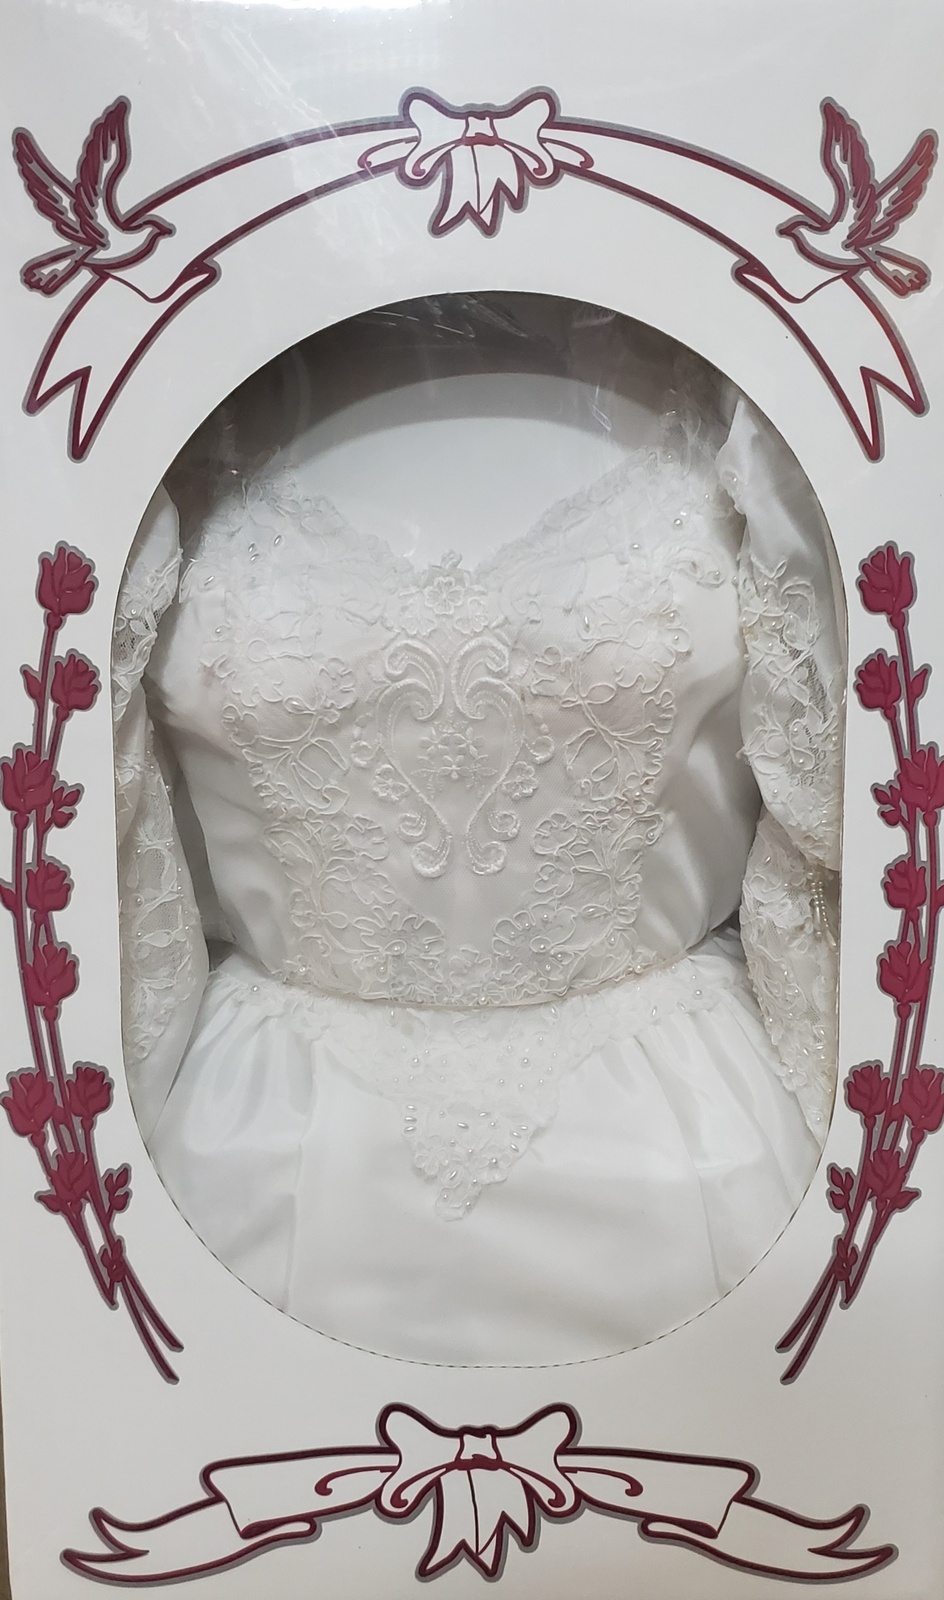 Wedding Gown Preservation